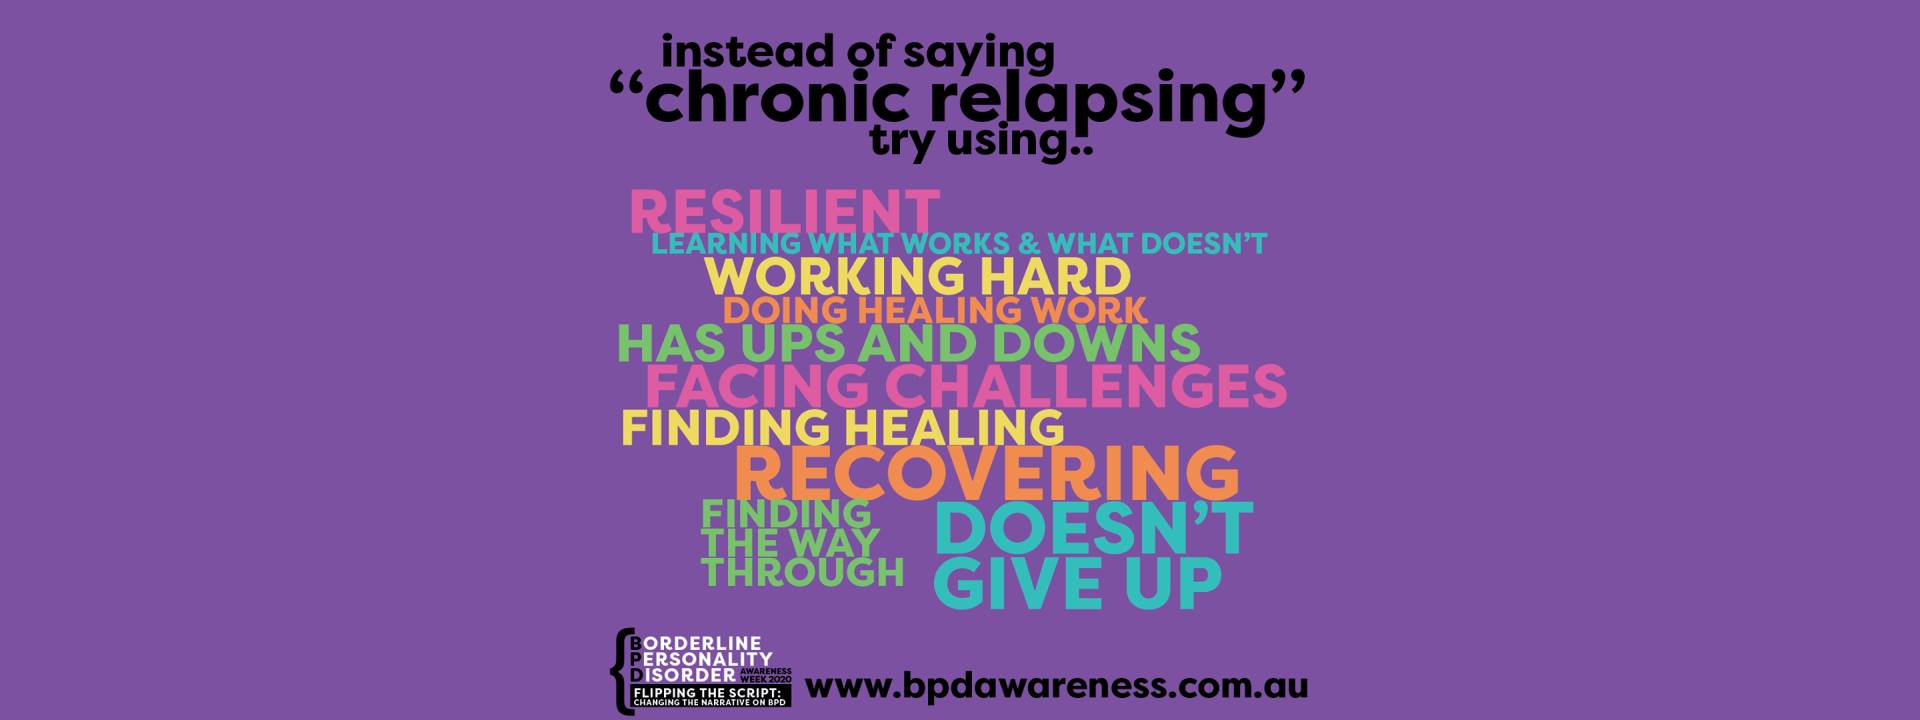 BPD Awareness Week - Not Chronic Relapsing